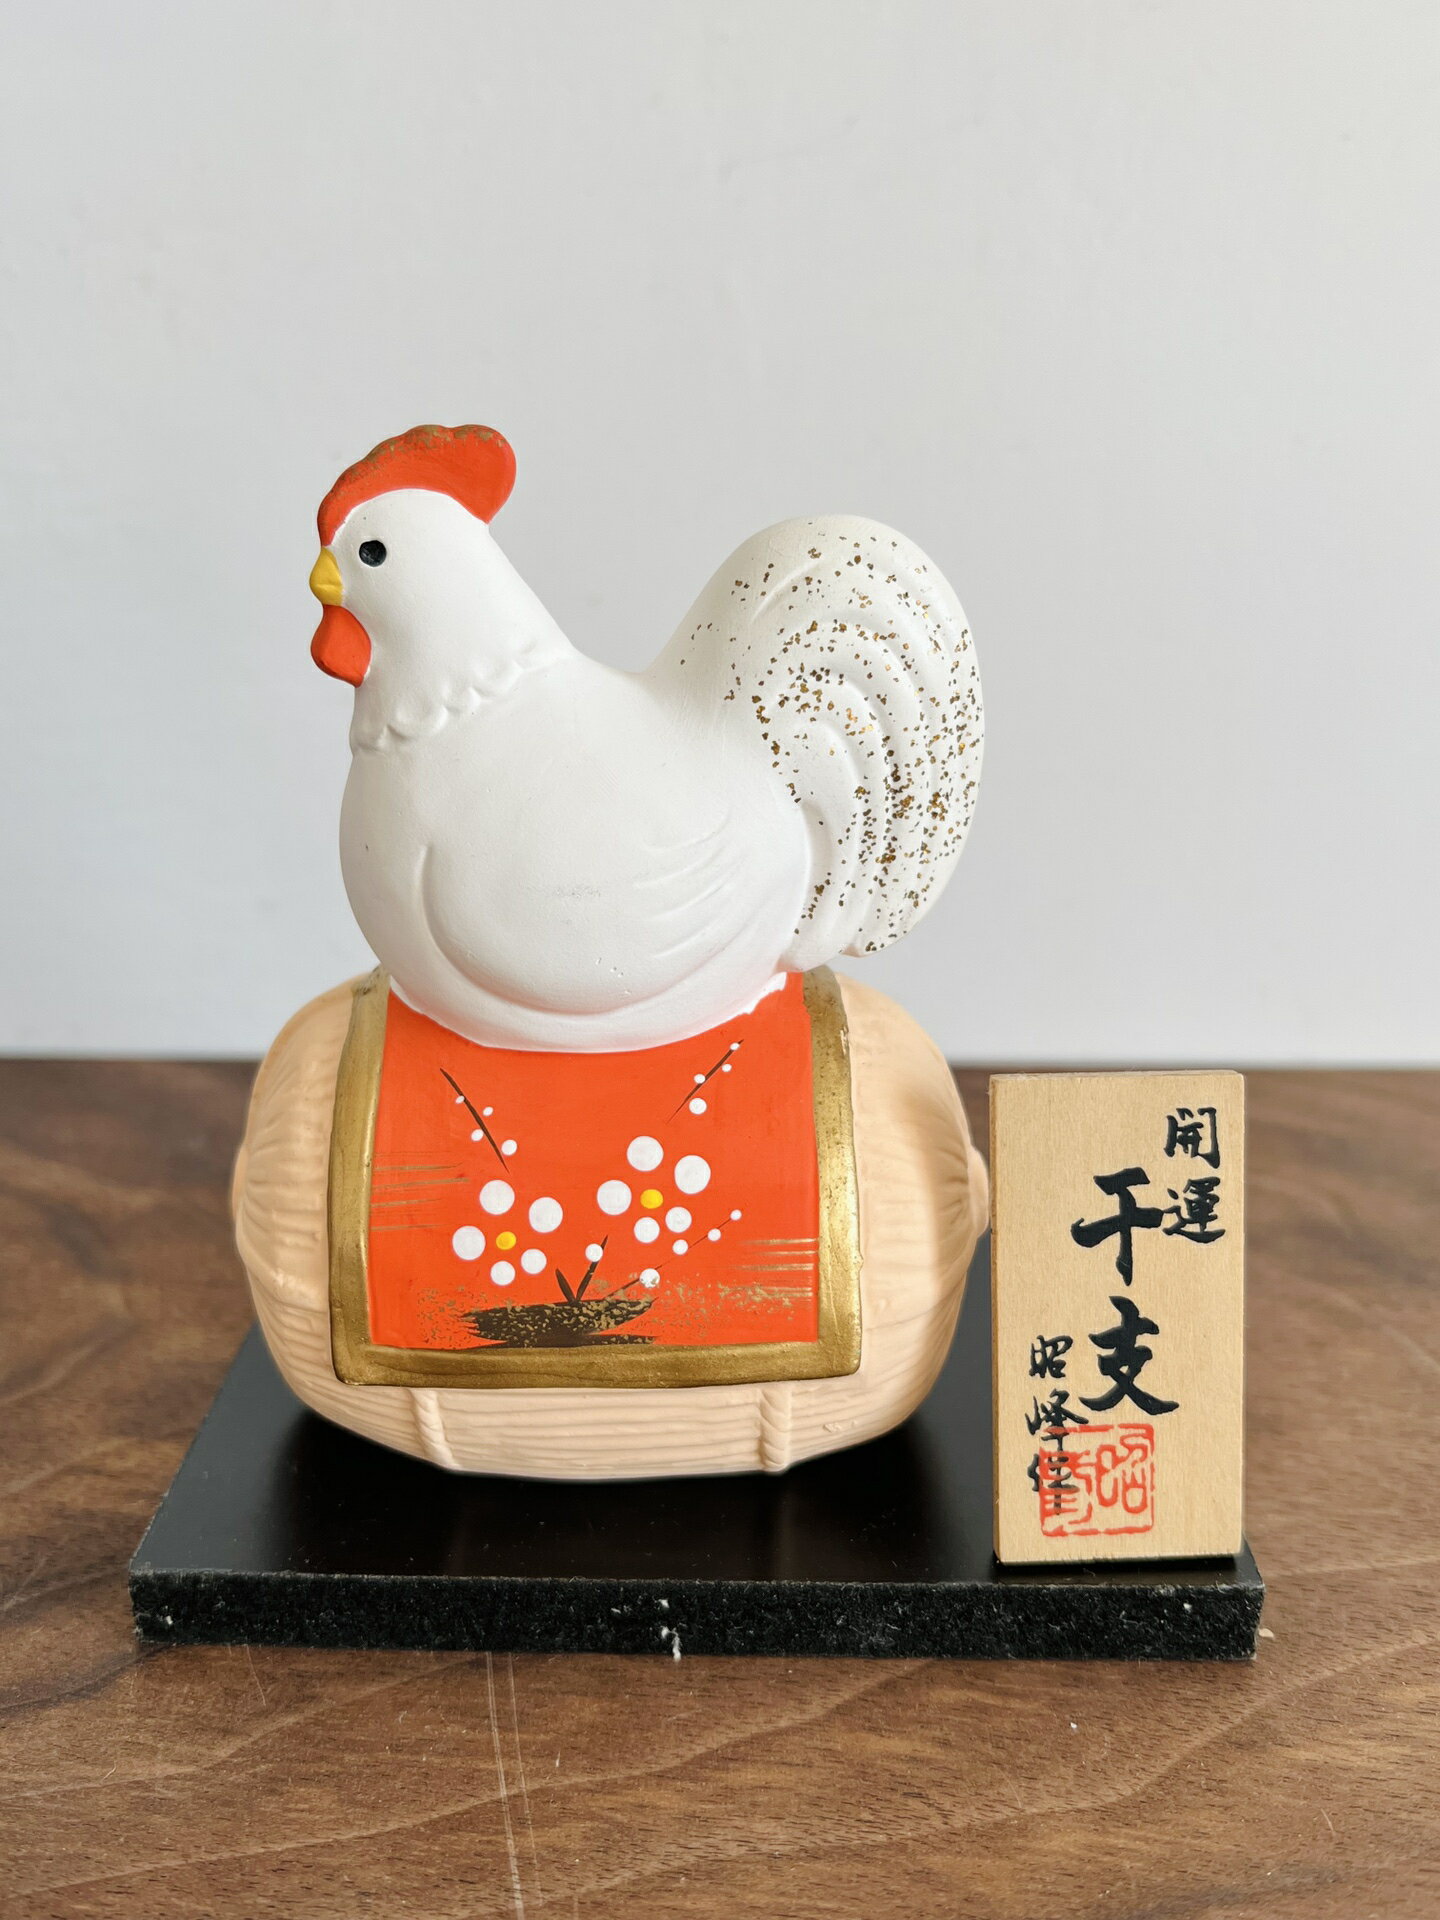 日本 鄉土玩具 開運招福 干支生肖雞置物擺飾 緣起物